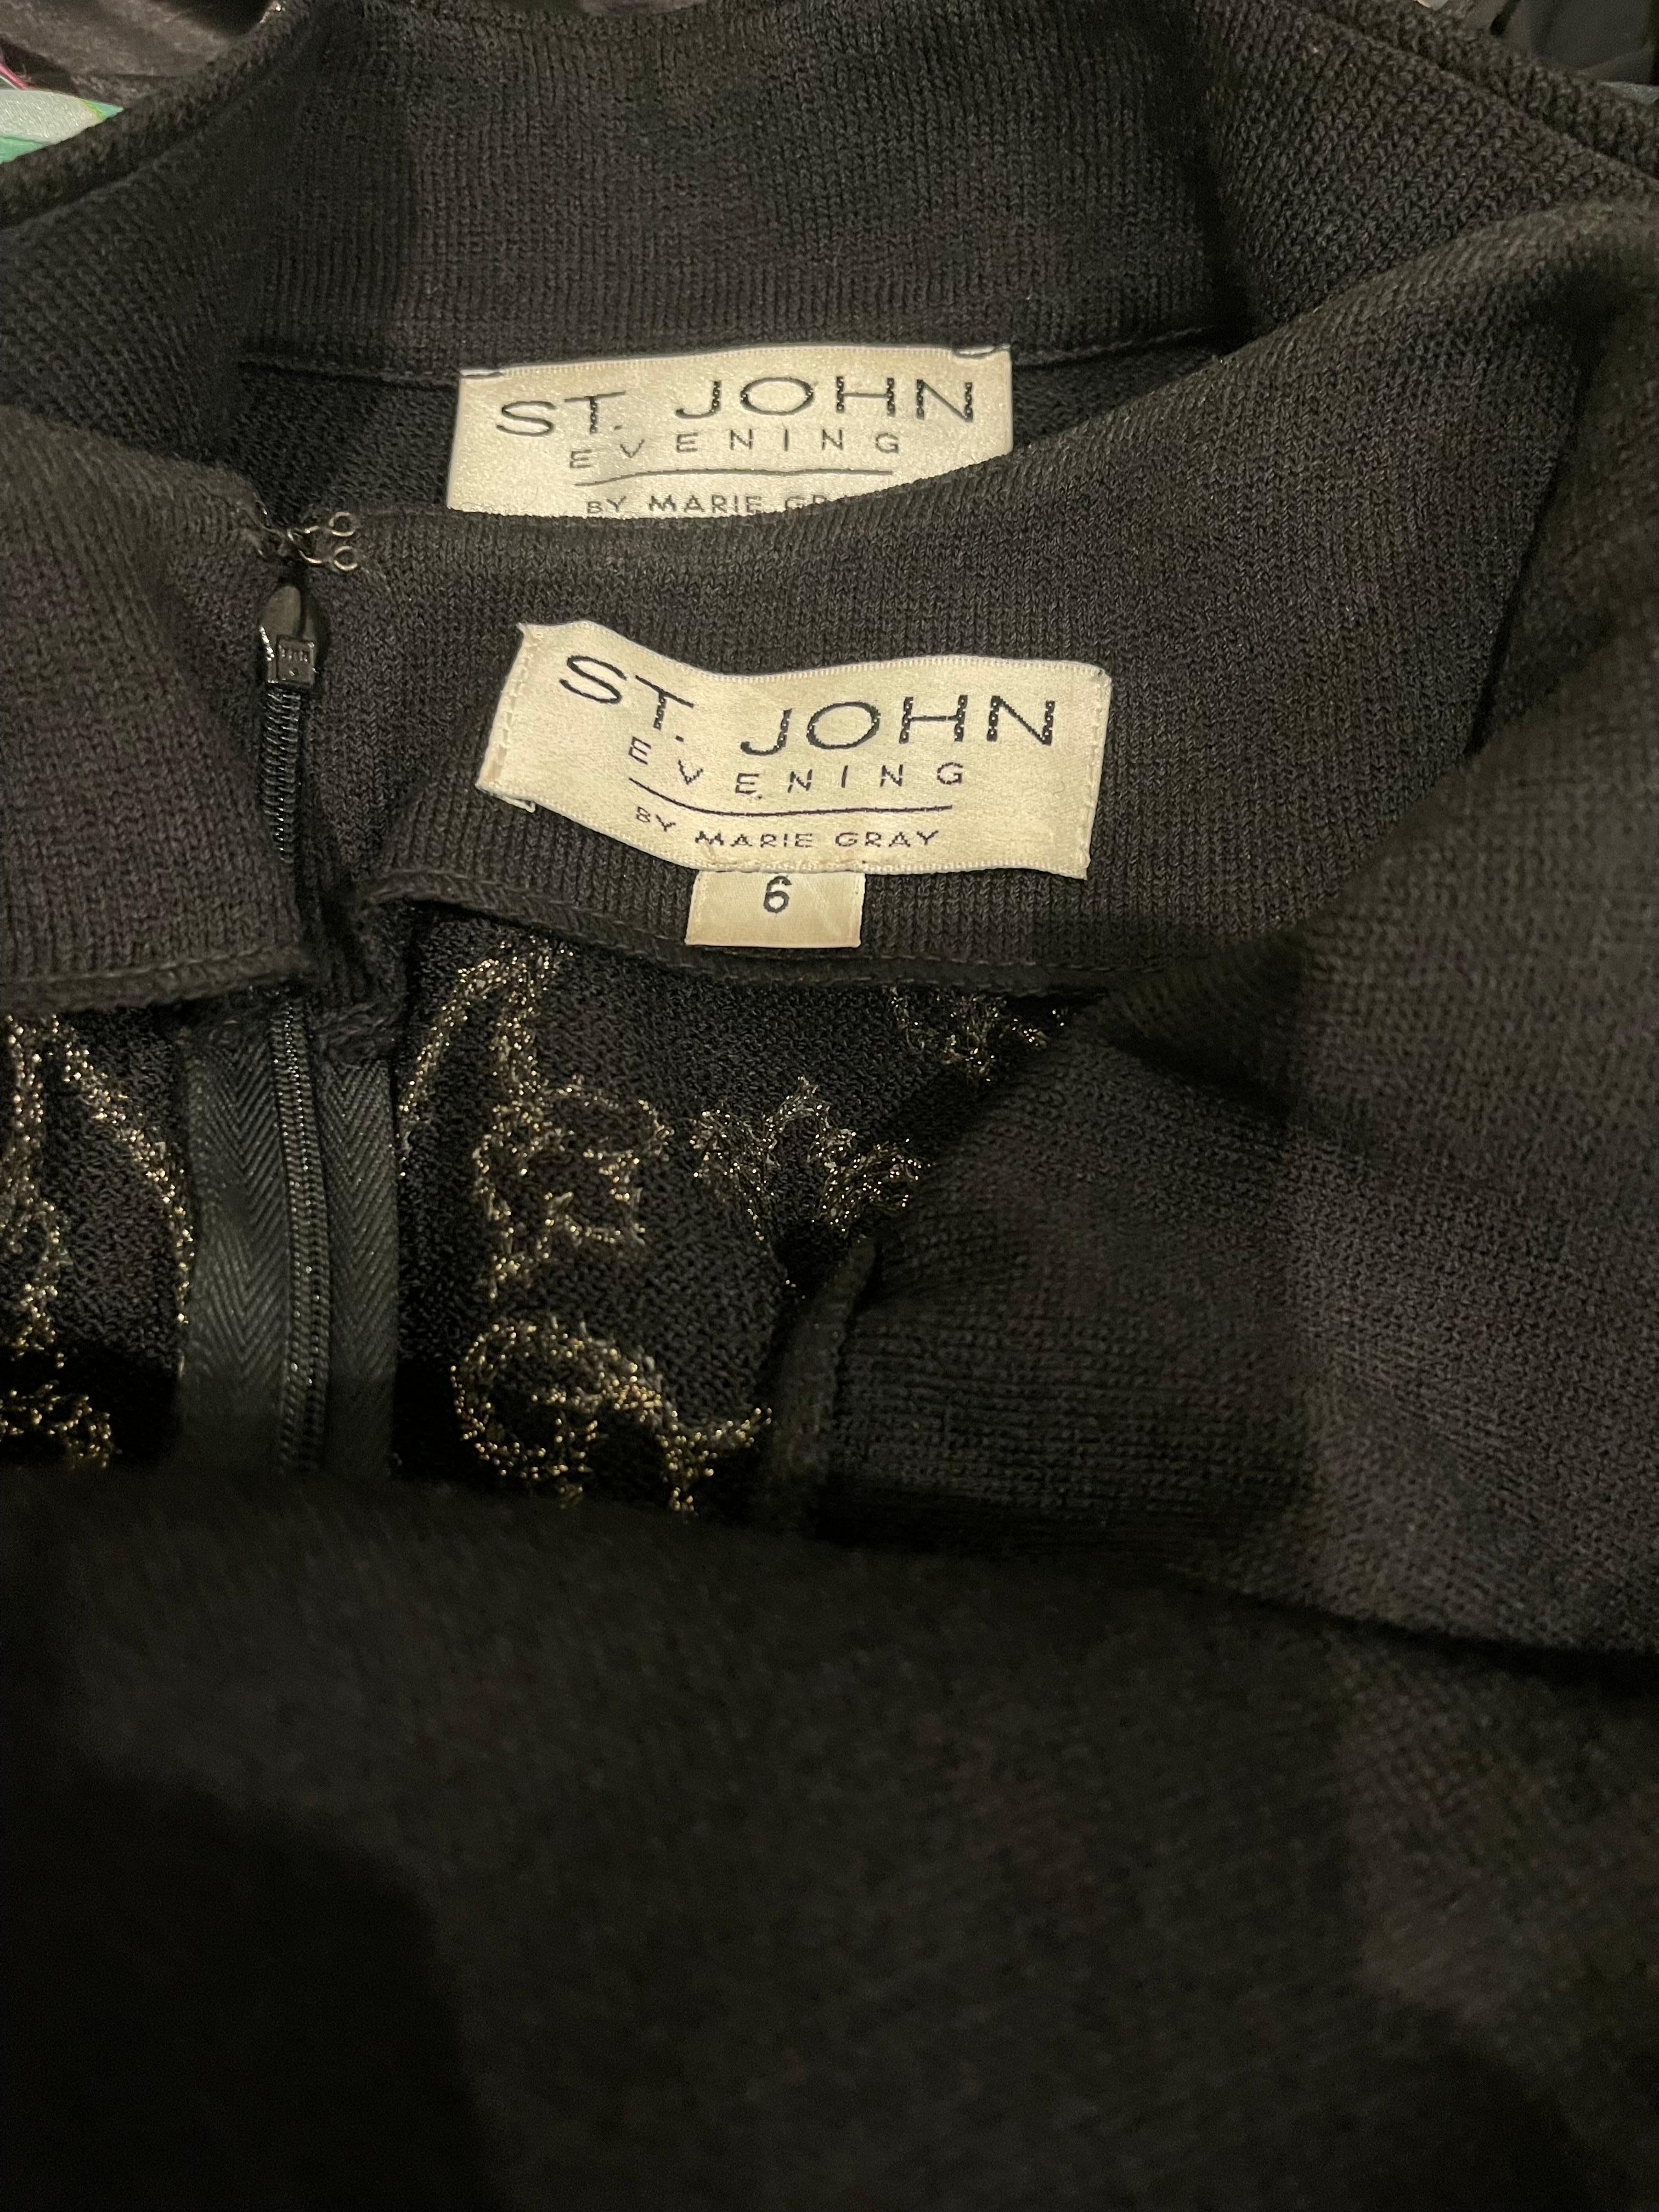 Magnifique robe sans manches en tricot noir ST JOHN EVENING by MARIE GRAY des années 1990 et sa veste assortie ! La maille santana douce et extensible est caractéristique de la marque. La veste est dotée de fermetures auto-agrippantes sur le haut du